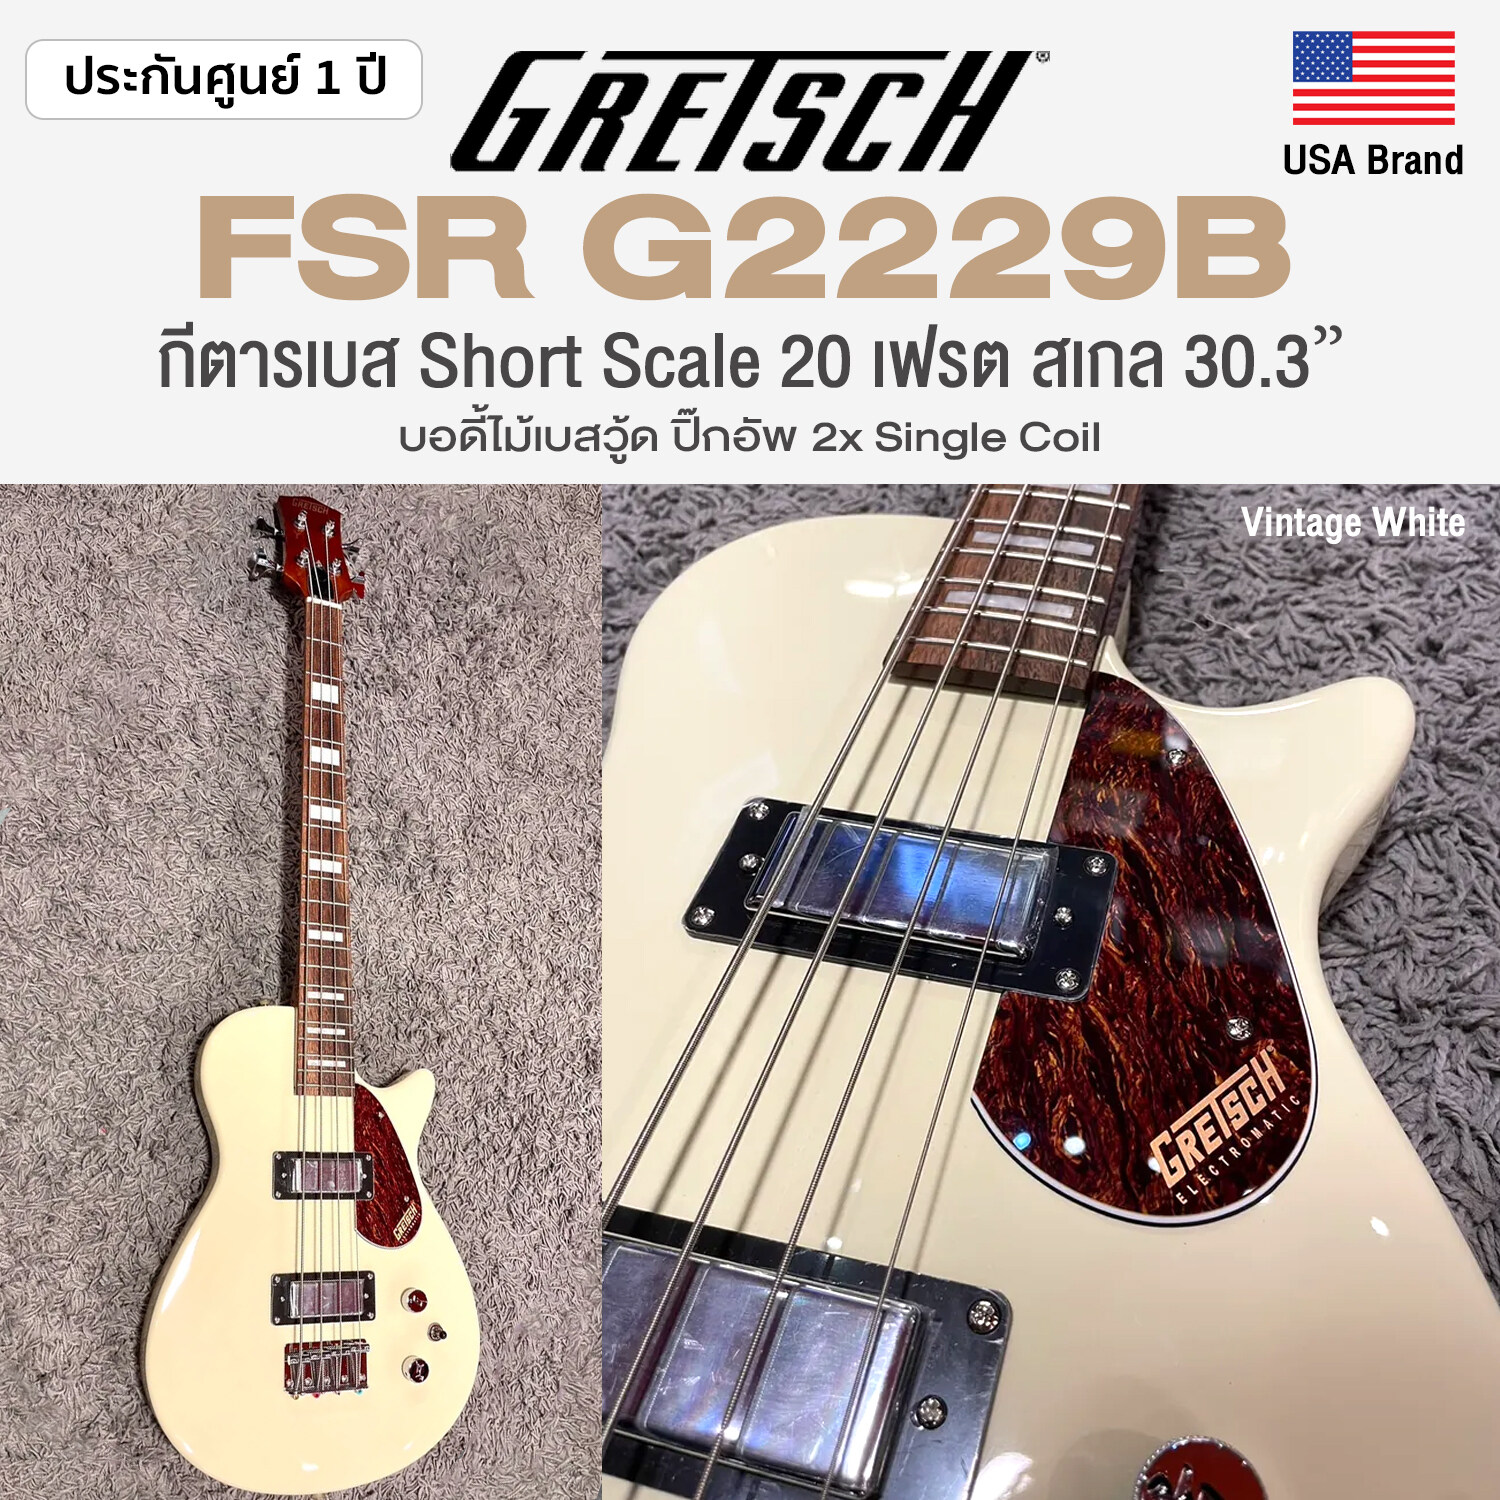 Gretsch G2229B Vintage White